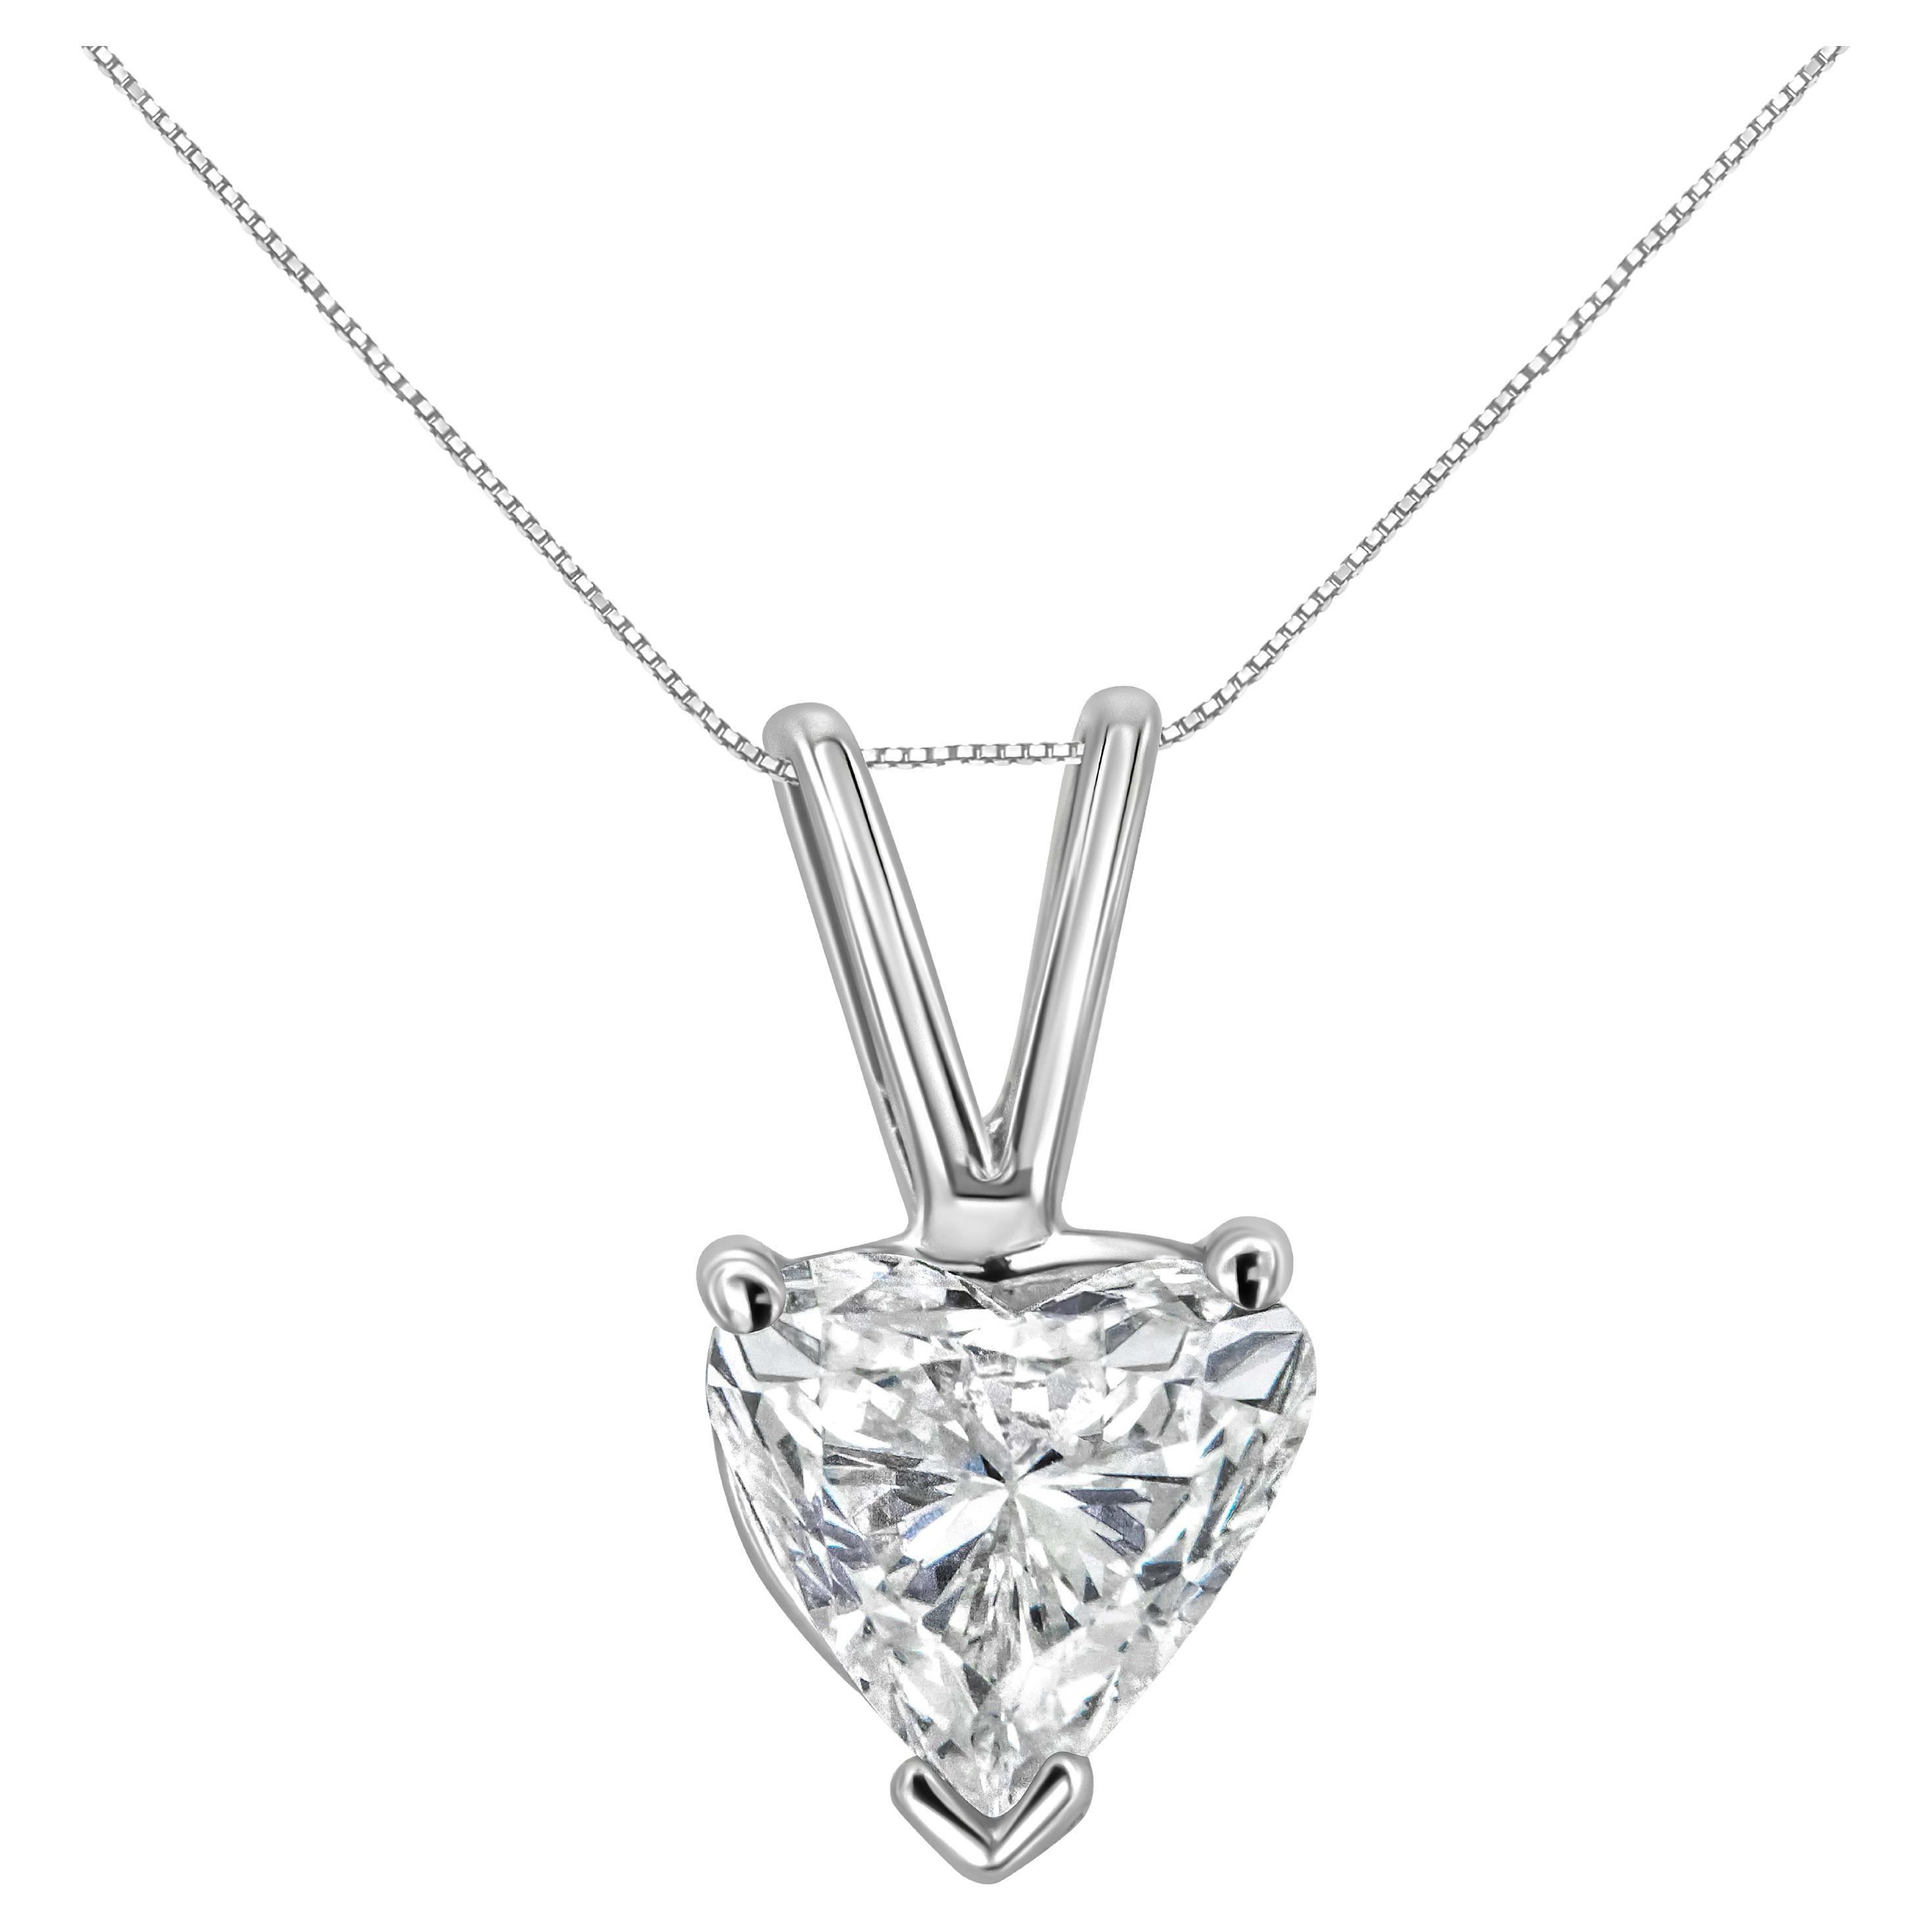 14K White Gold 1/5 Carat Solitaire Heart Diamond Pendant Necklace